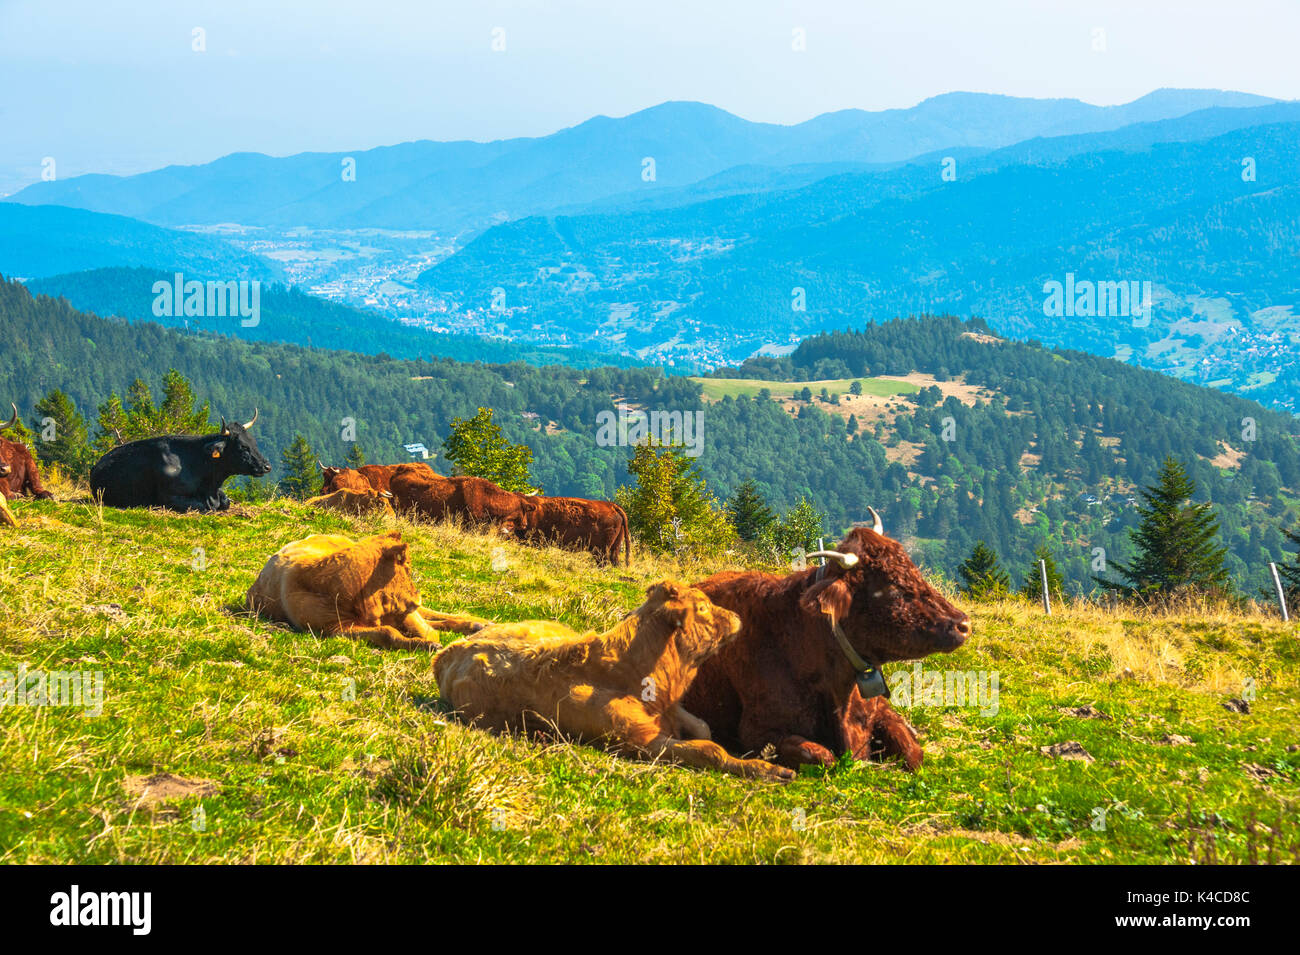 Vaches avec vue sur la vallée de Munster, origine du célèbre fromage Munster, célèbre produit régional d'Alsace, France Banque D'Images